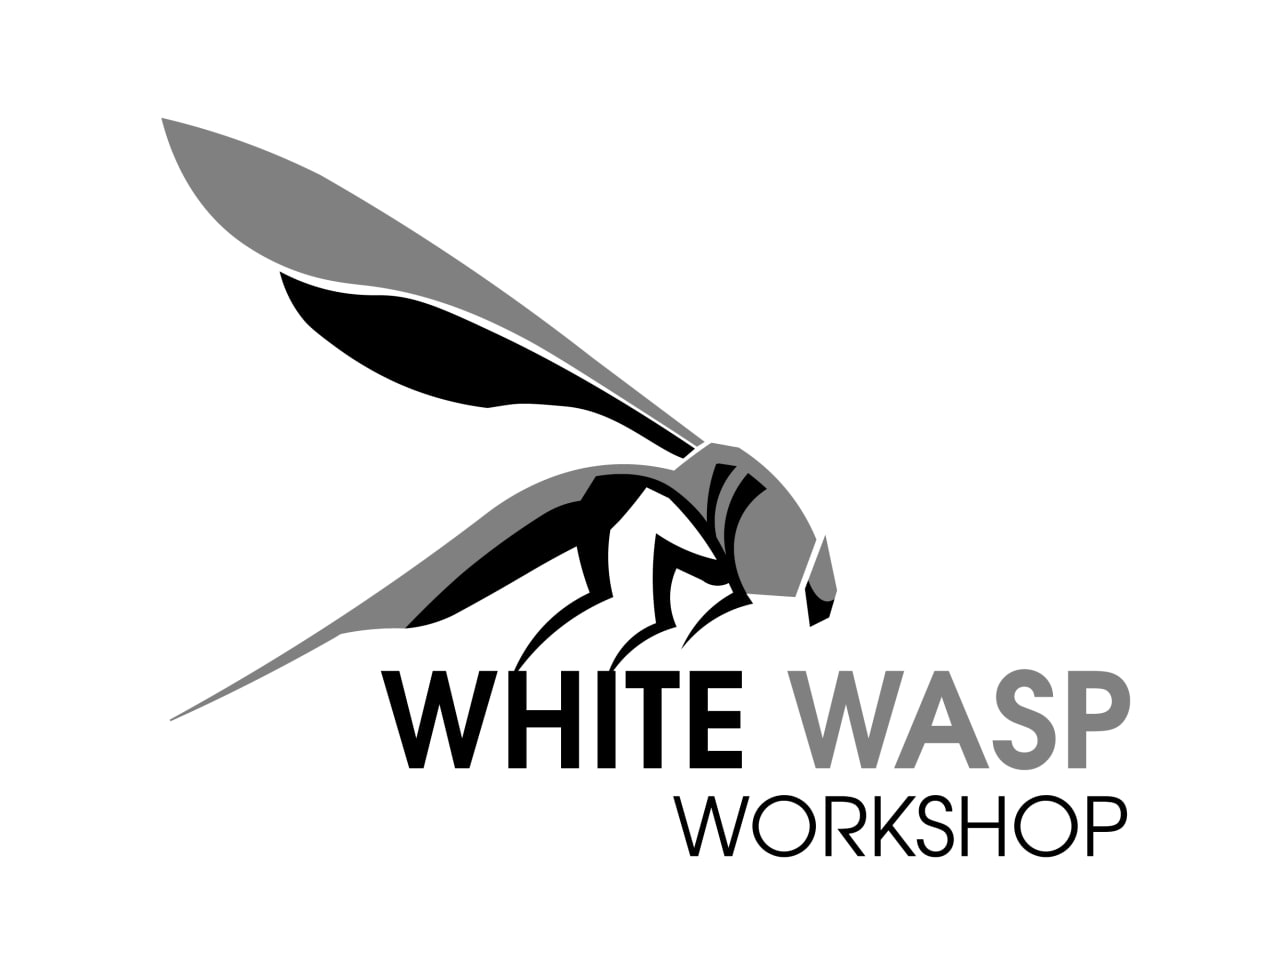 White Wasp Workshop